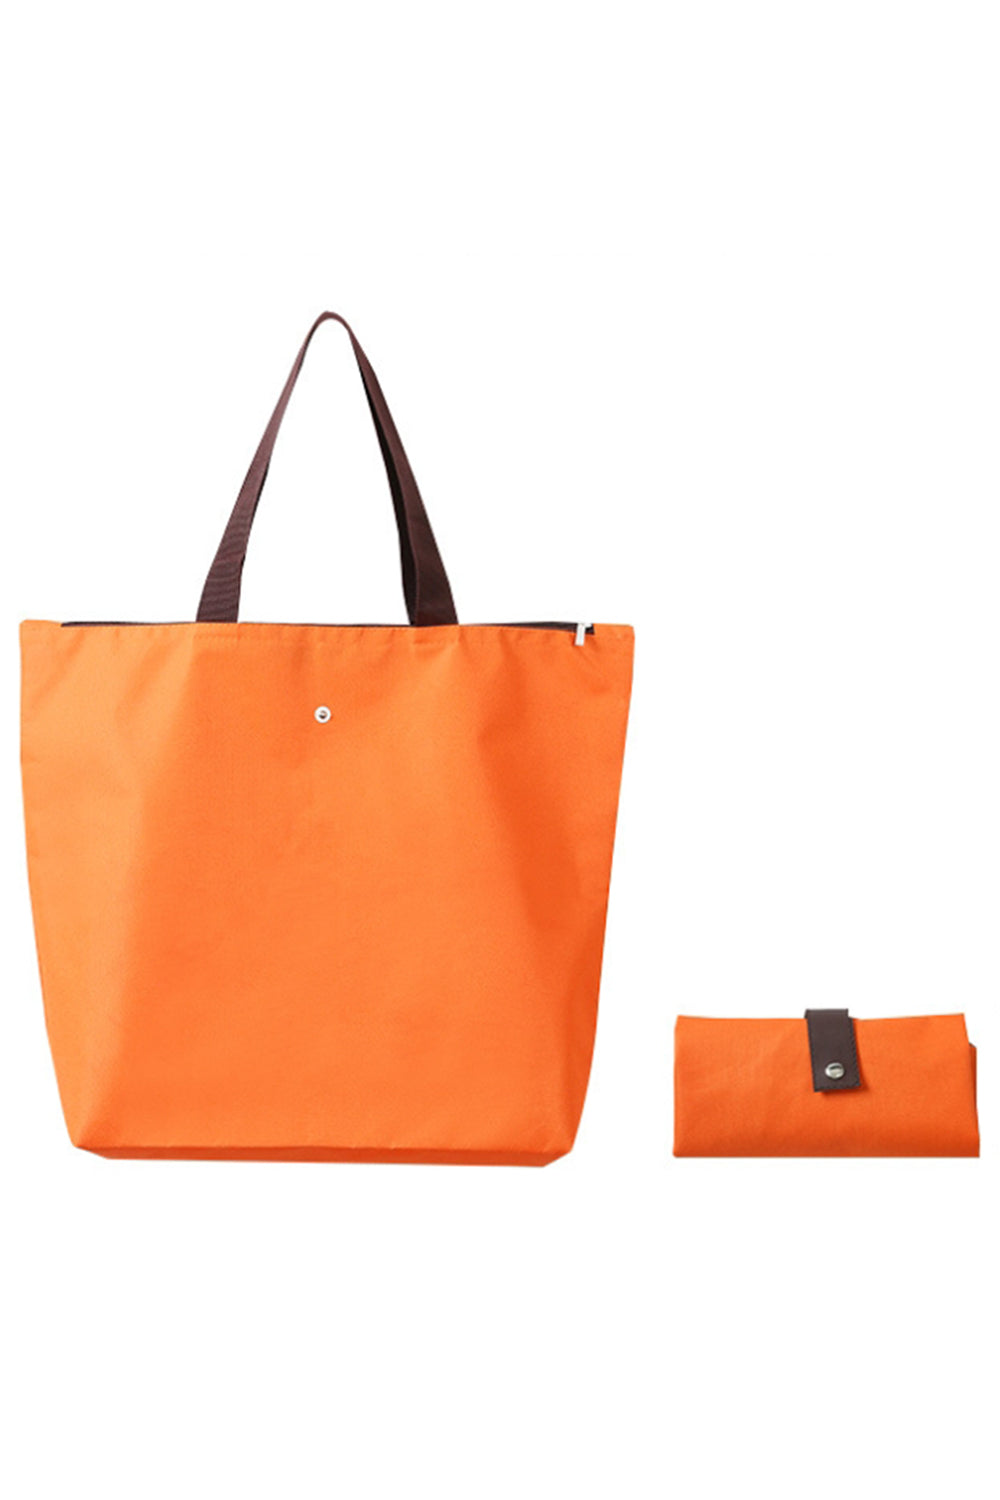 客製化－環保牛津布摺疊收納購物袋手提袋(有底無側) | 禮歐禮贈品